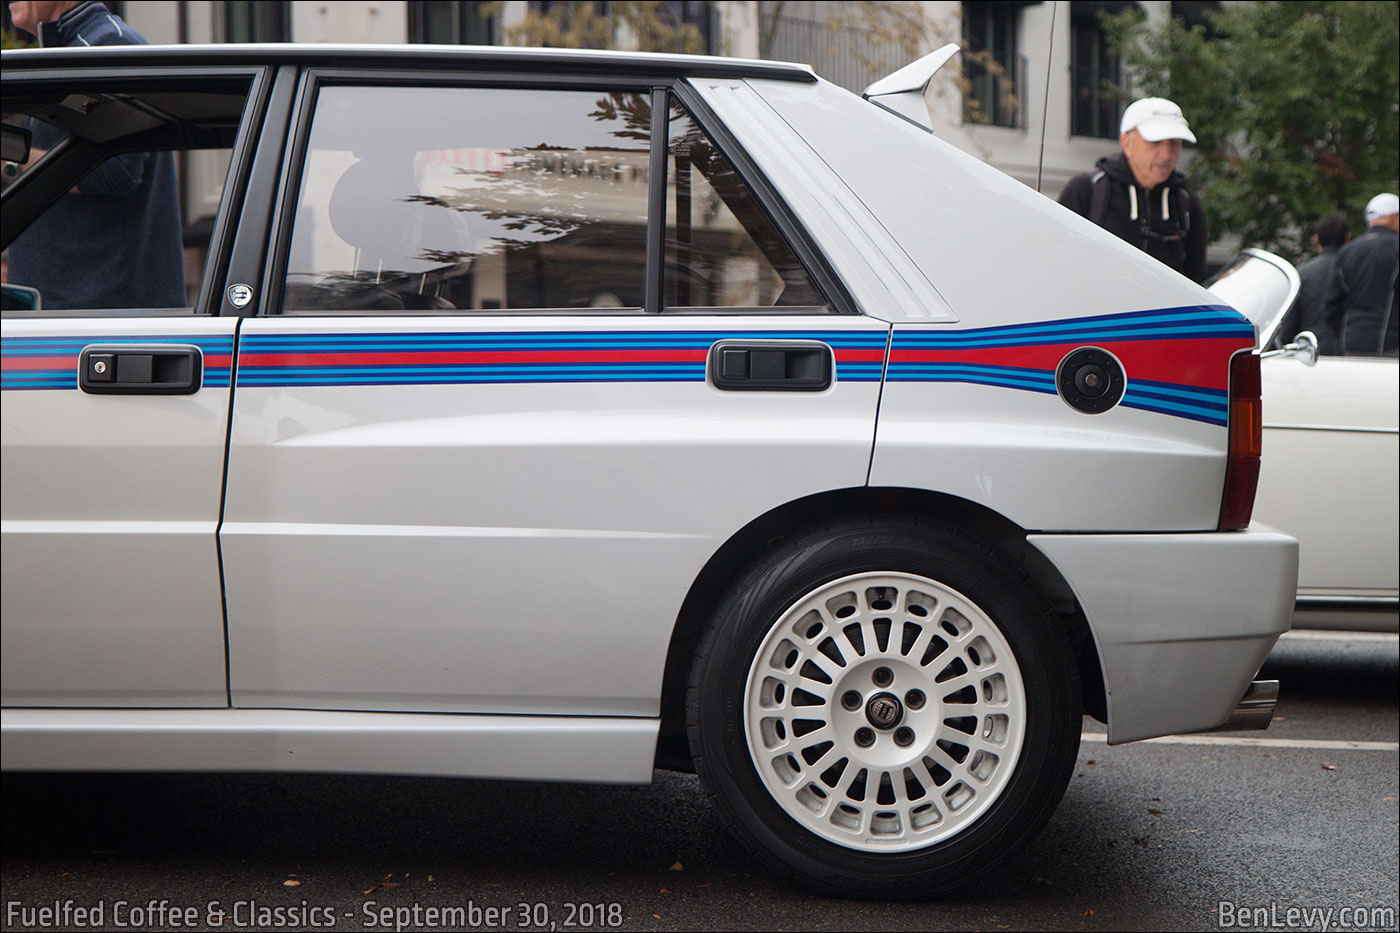 Rear door of Lancia Delta Integrale